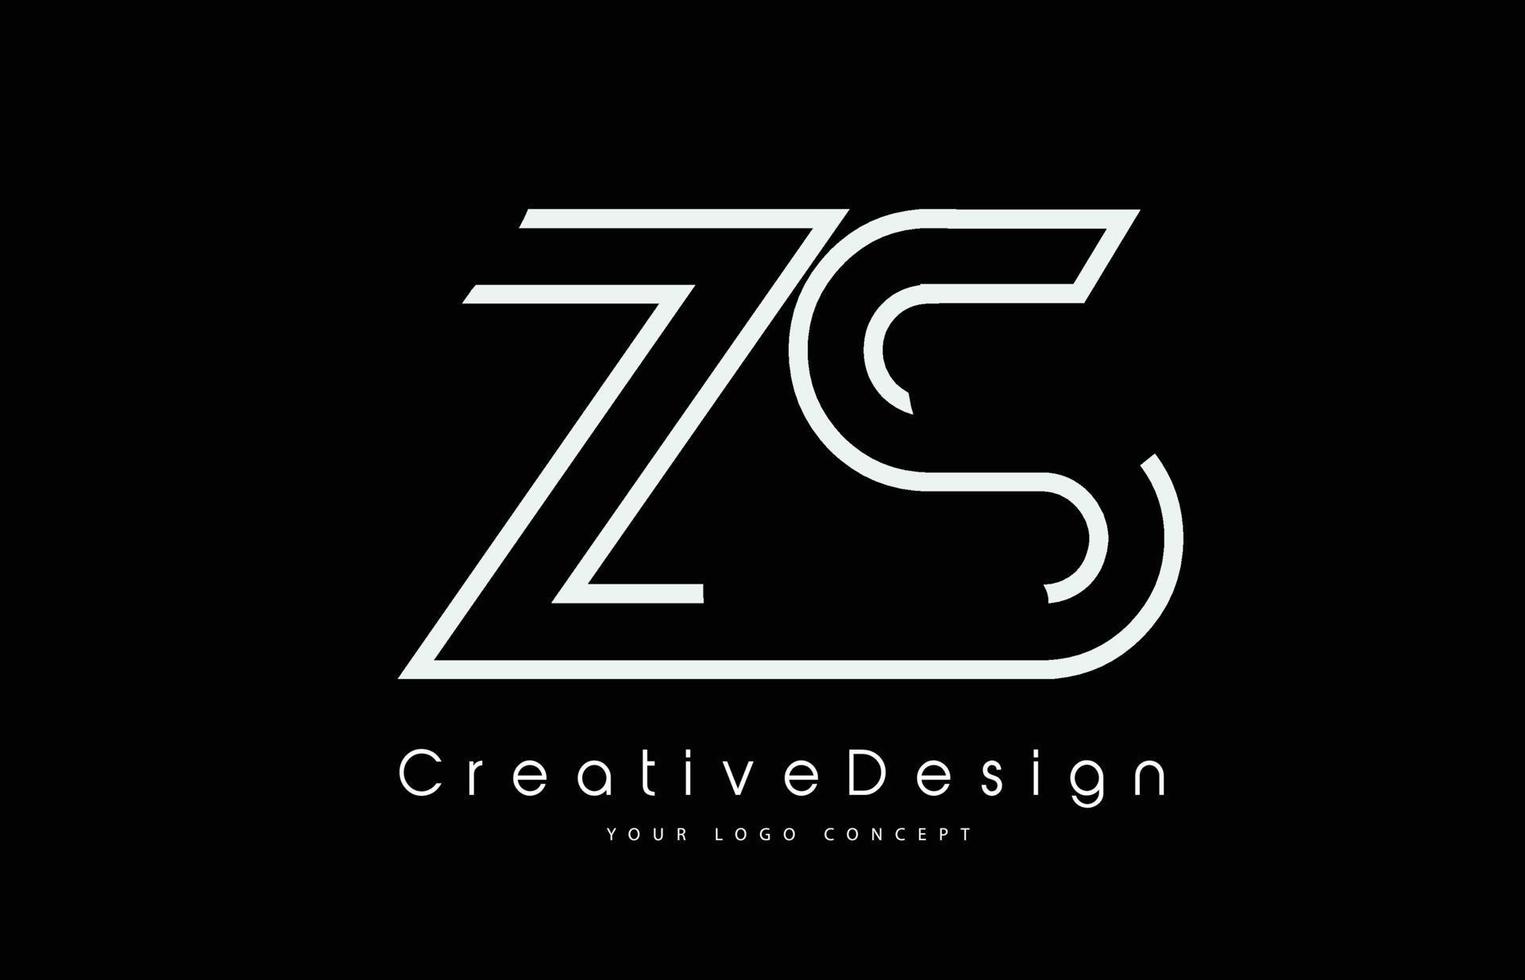 design de logotipo de letra zs zs nas cores brancas. vetor